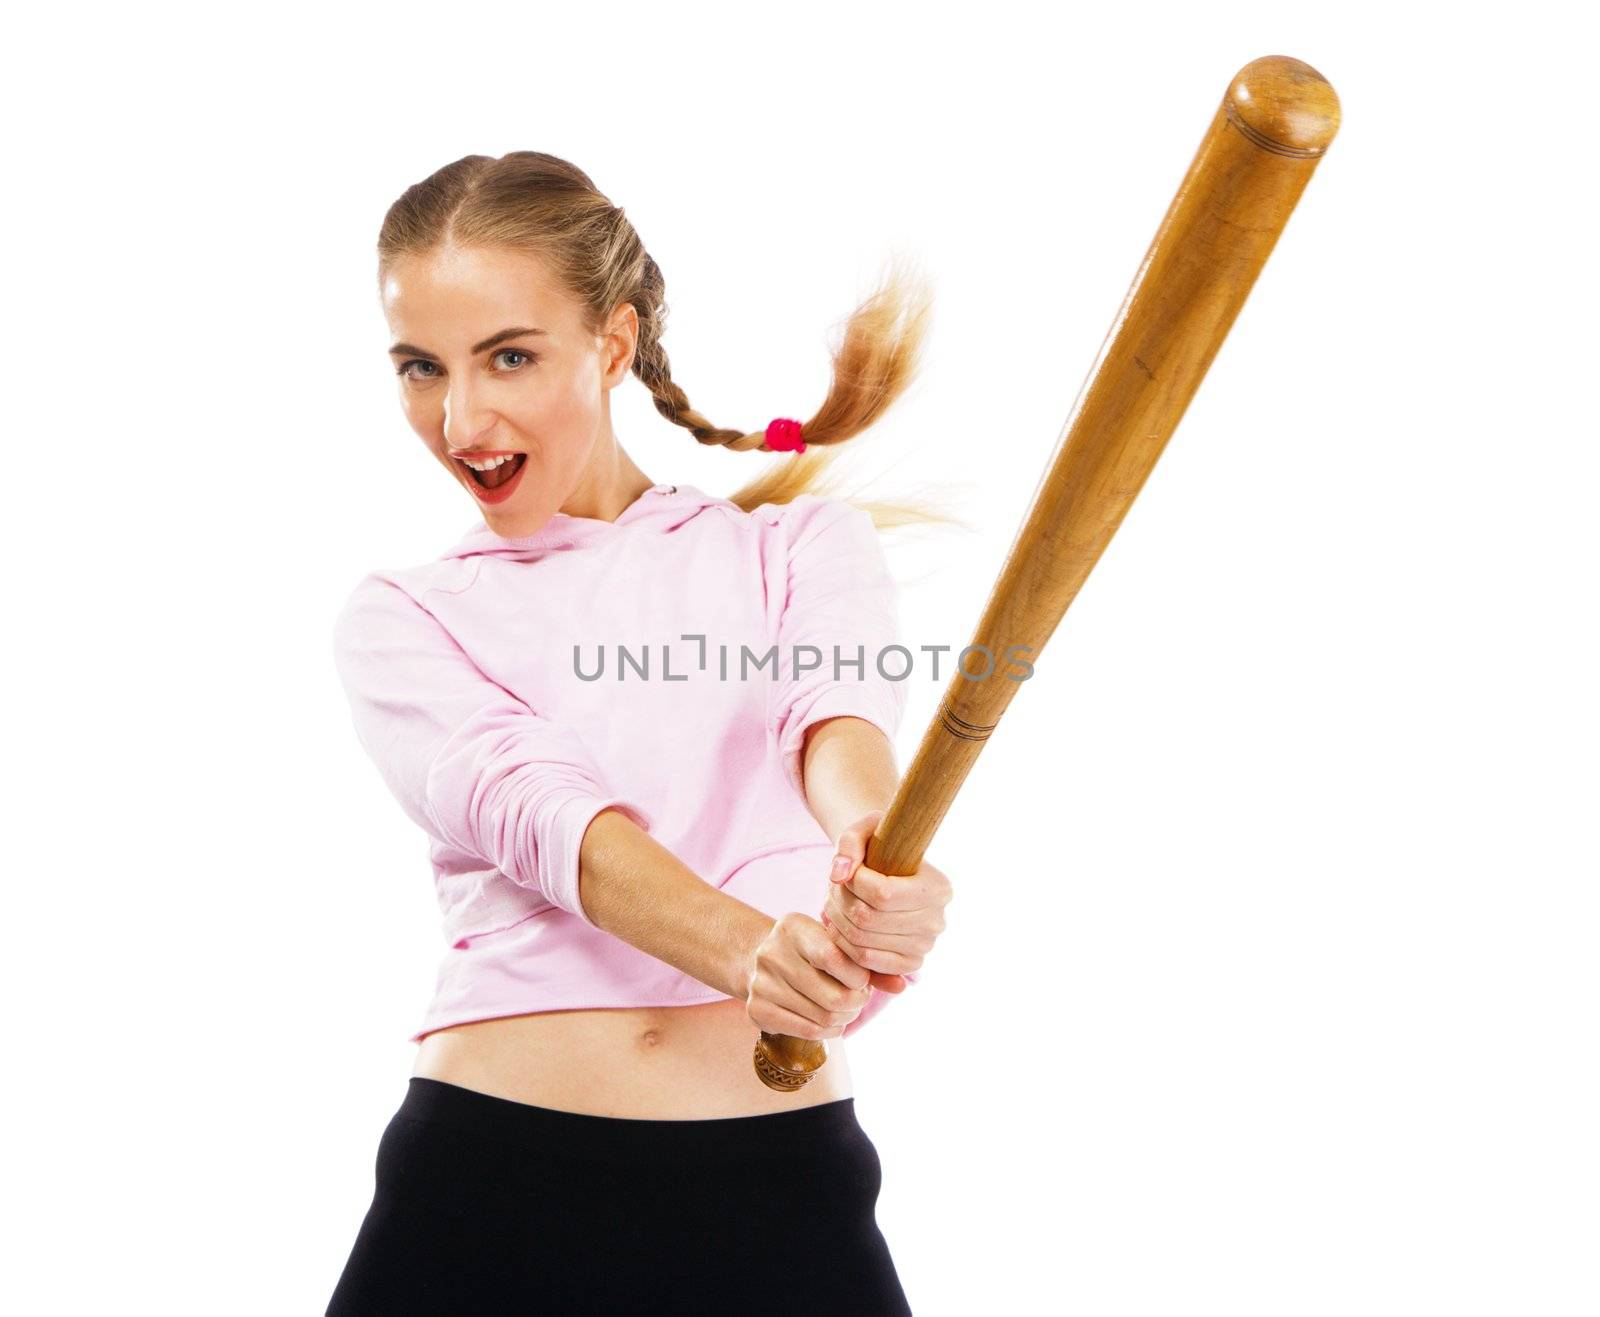 Pretty lady with a baseball bat by Gdolgikh